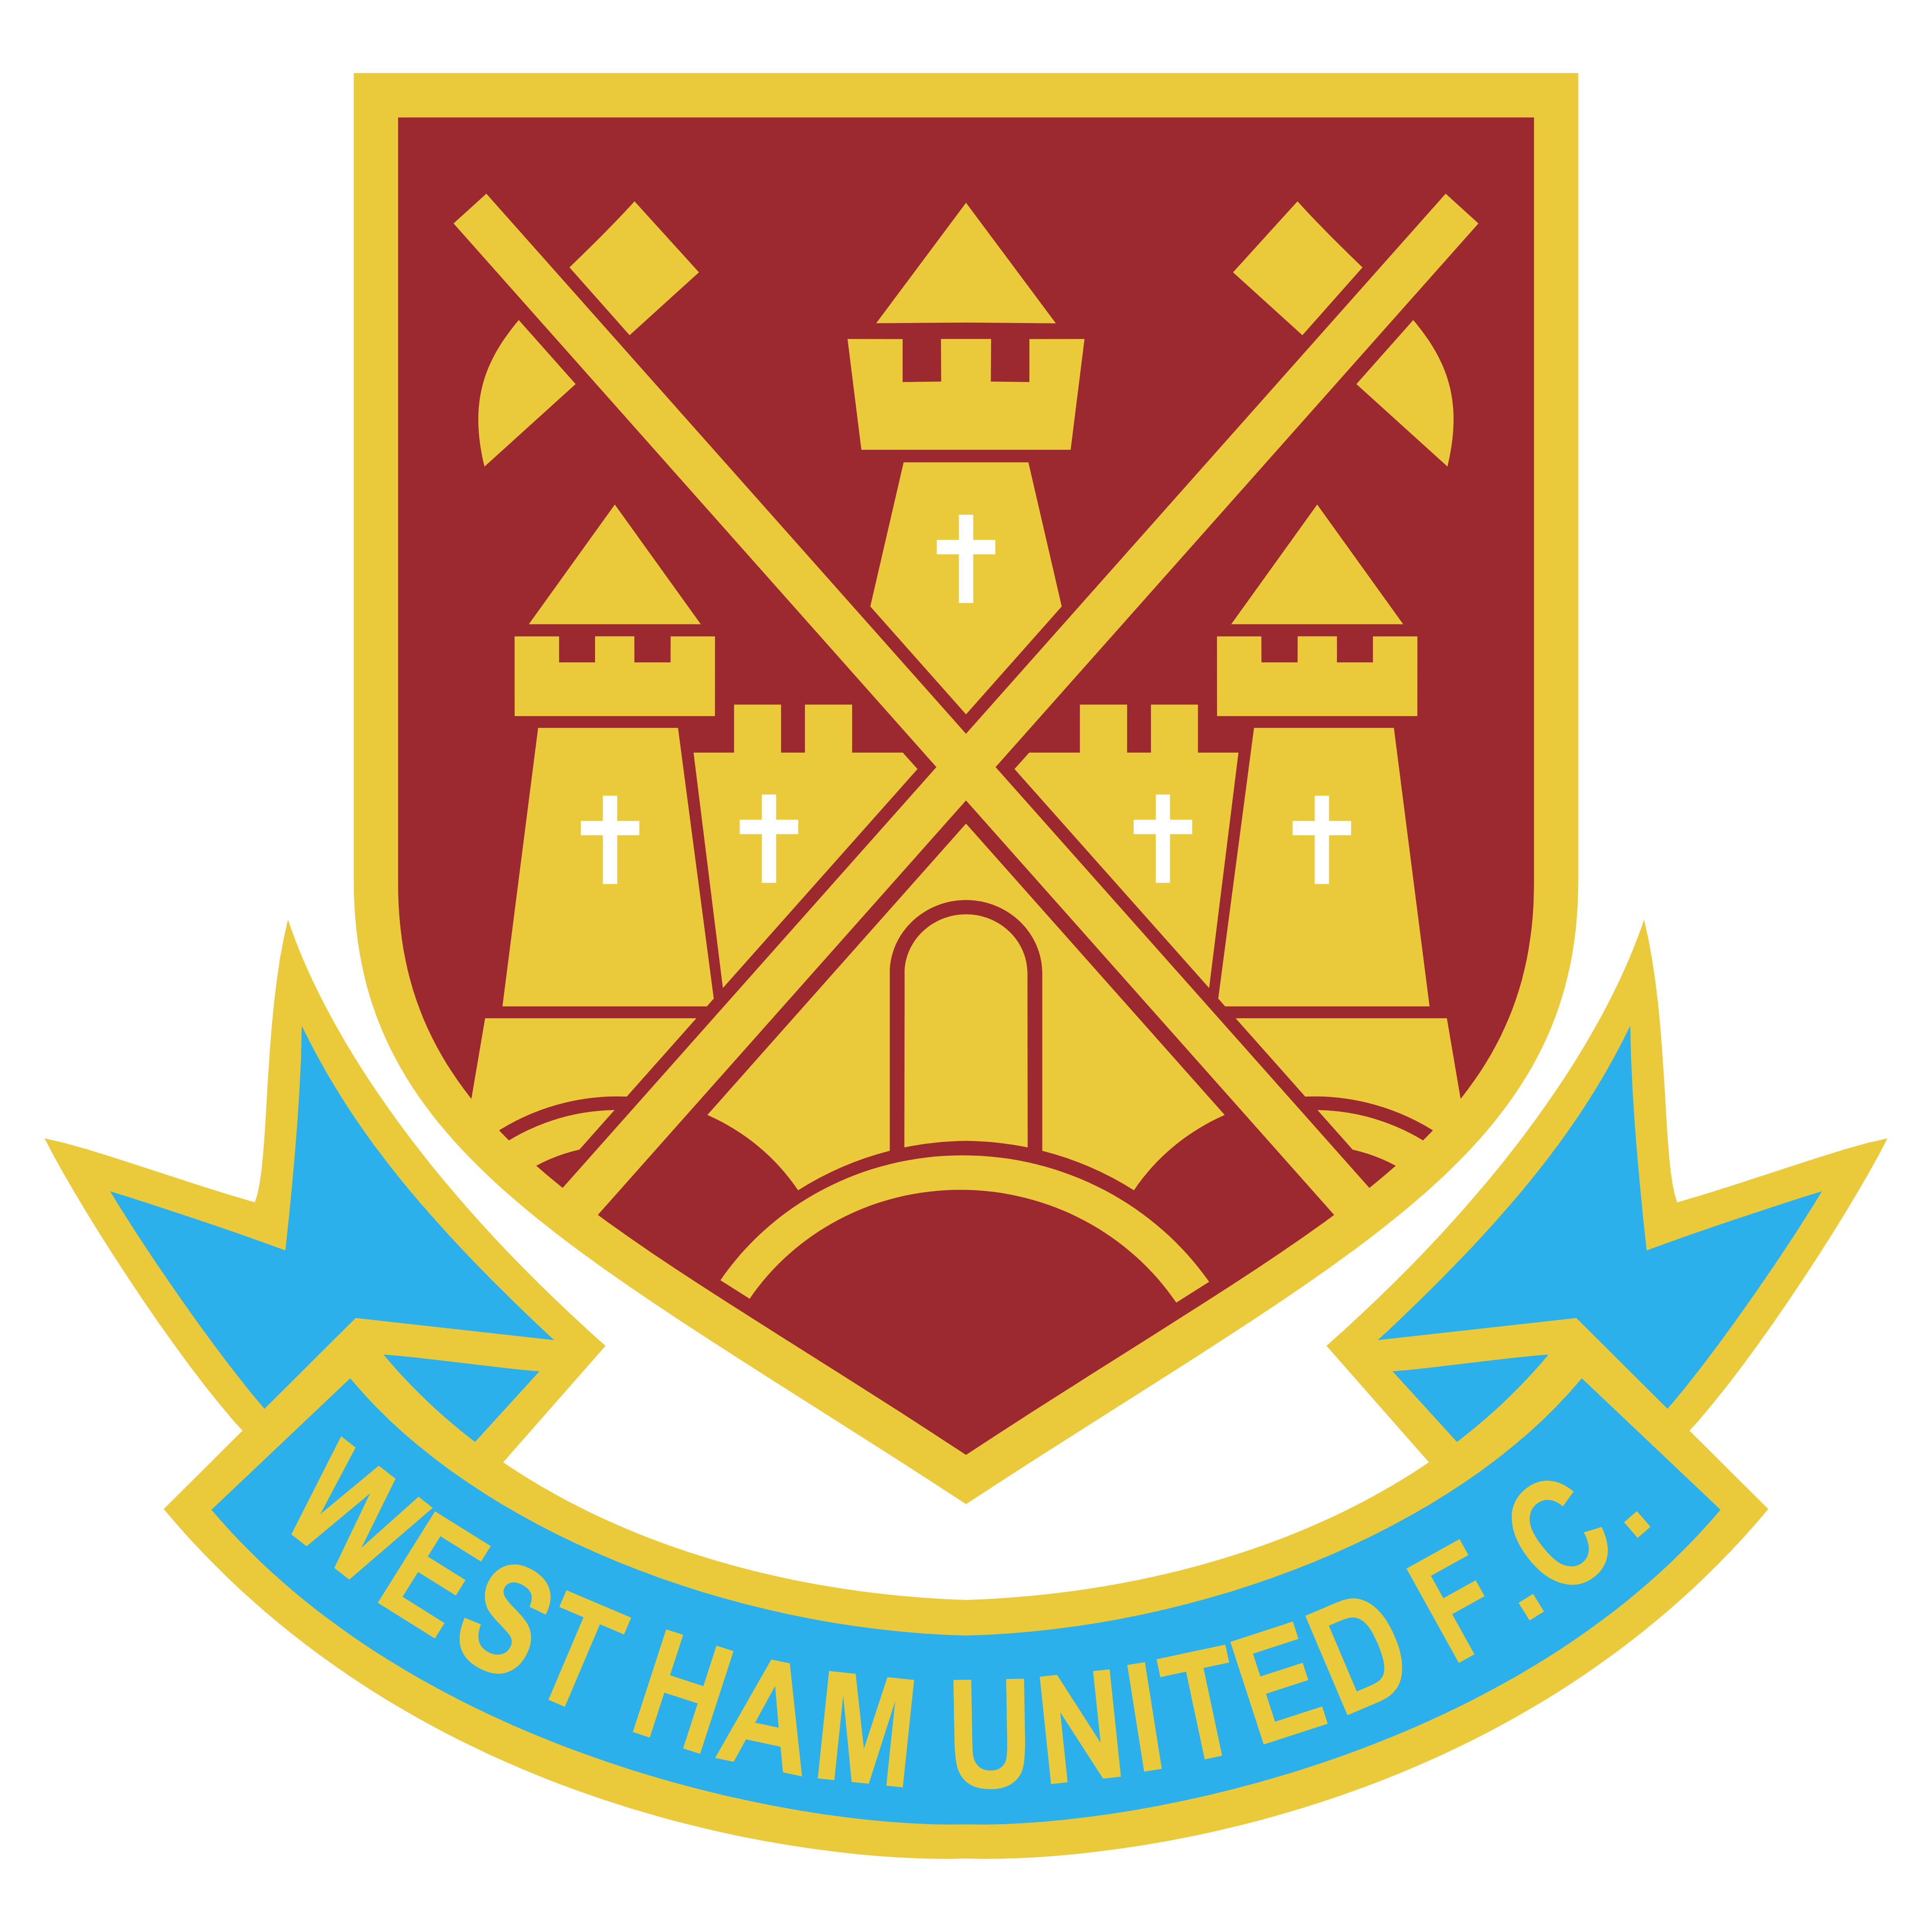 Westham United